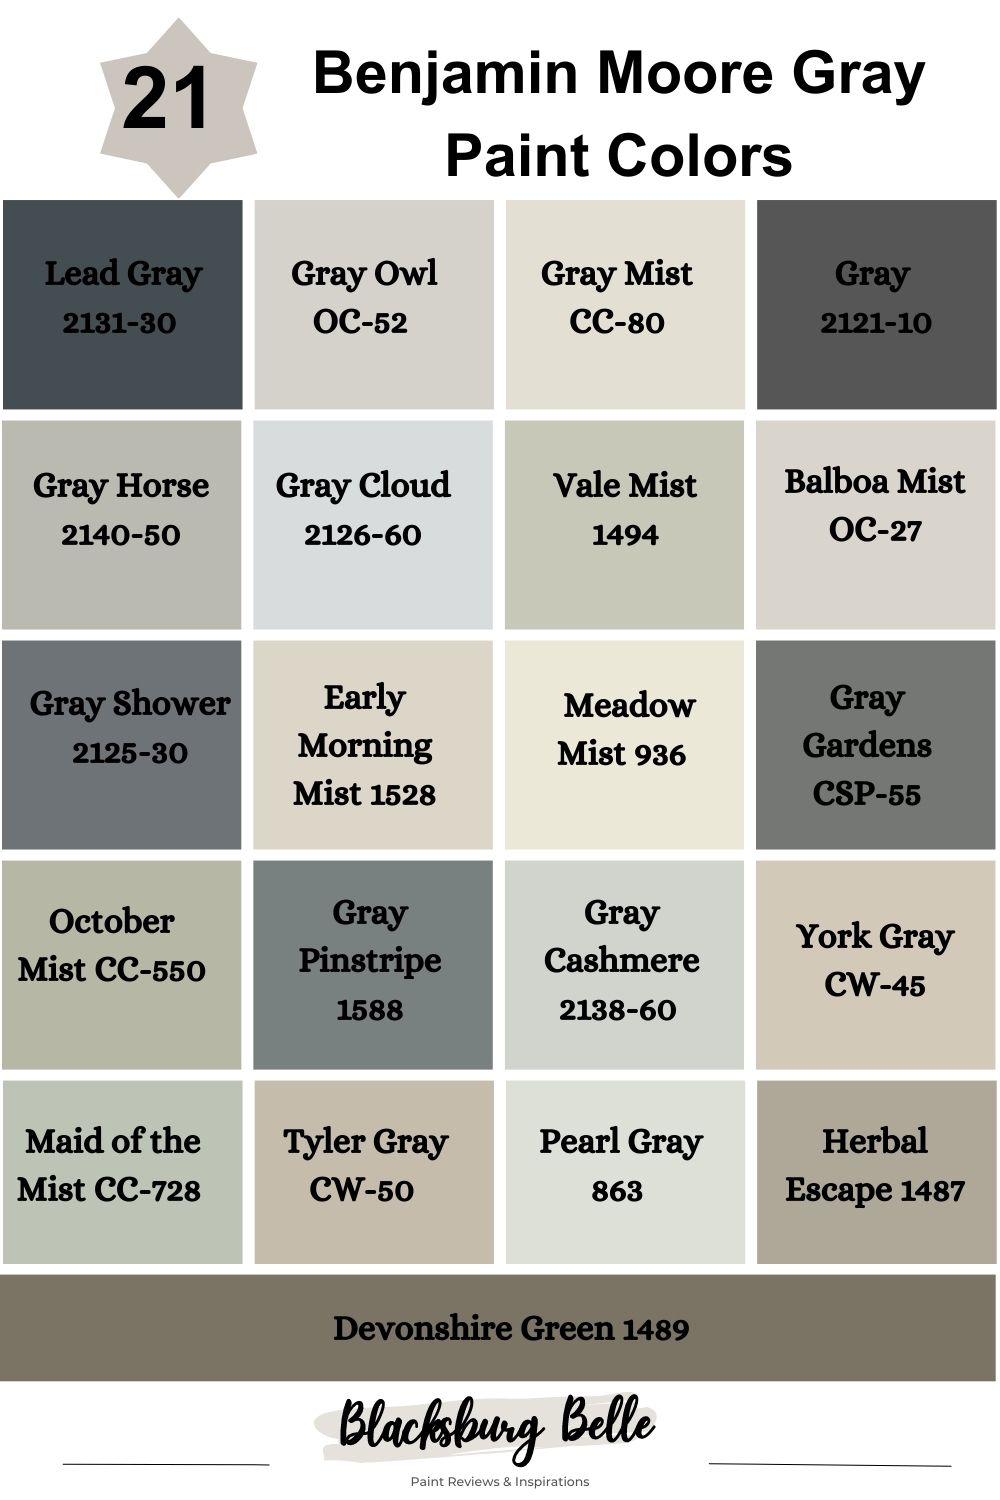 2131-30 Lead Gray - Paint Color